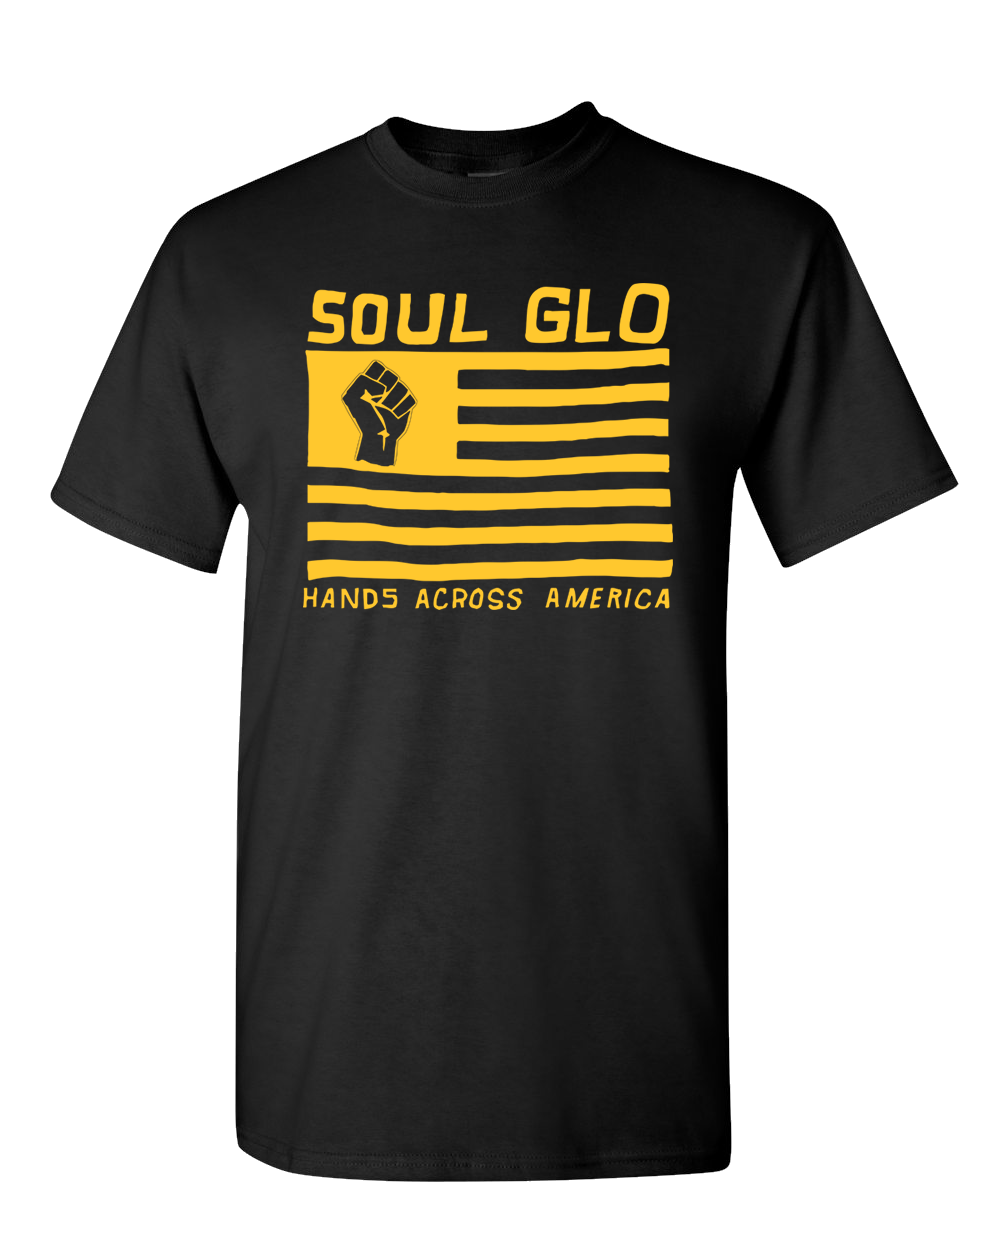 Soul Glo - Hands Across America